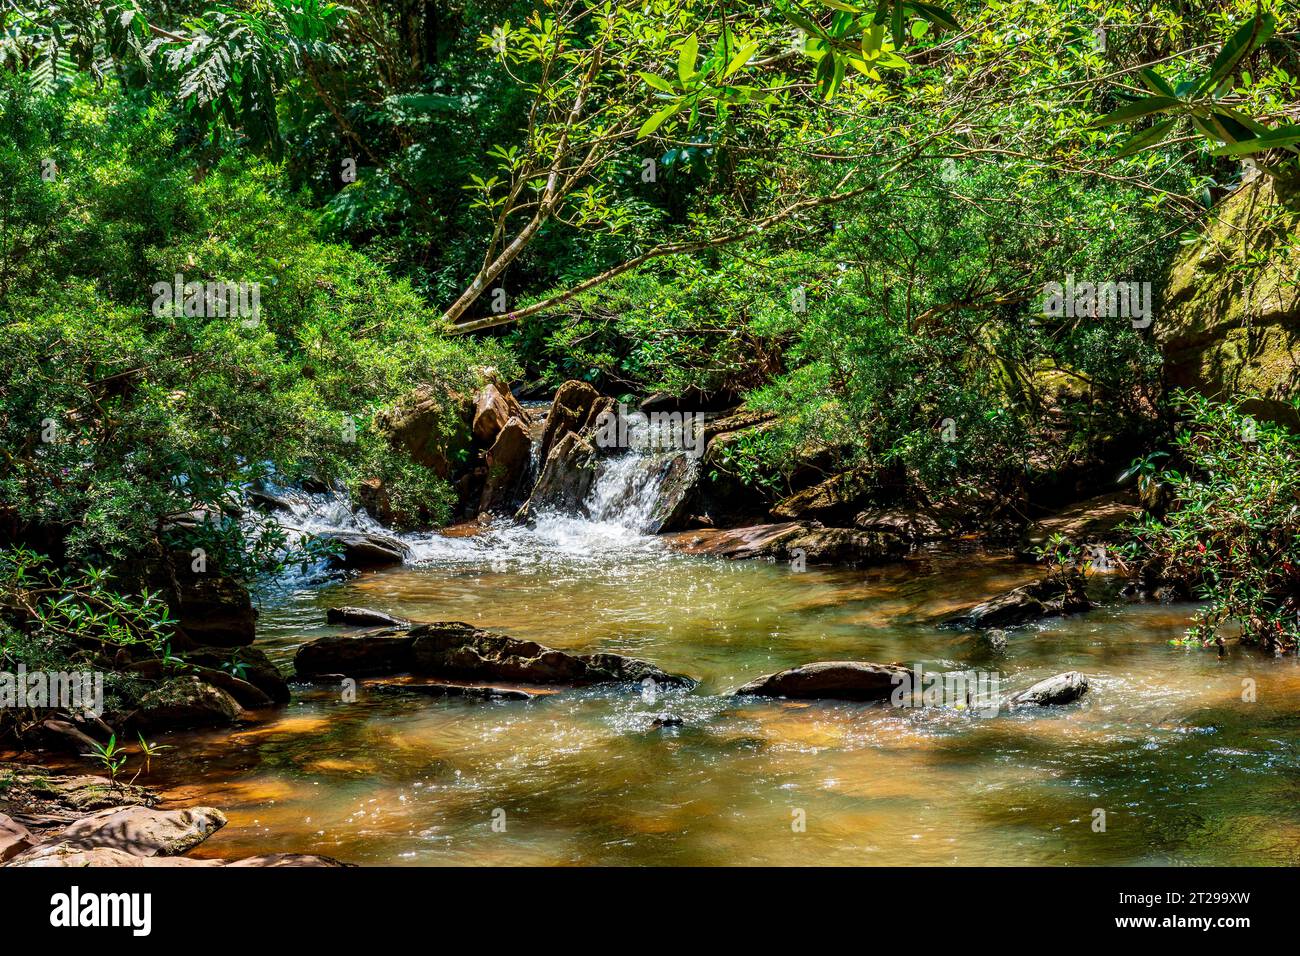 Petite rivière qui traverse la forêt parmi les rochers et la végétation dans l'état de Minas Gerais, Brésil Banque D'Images